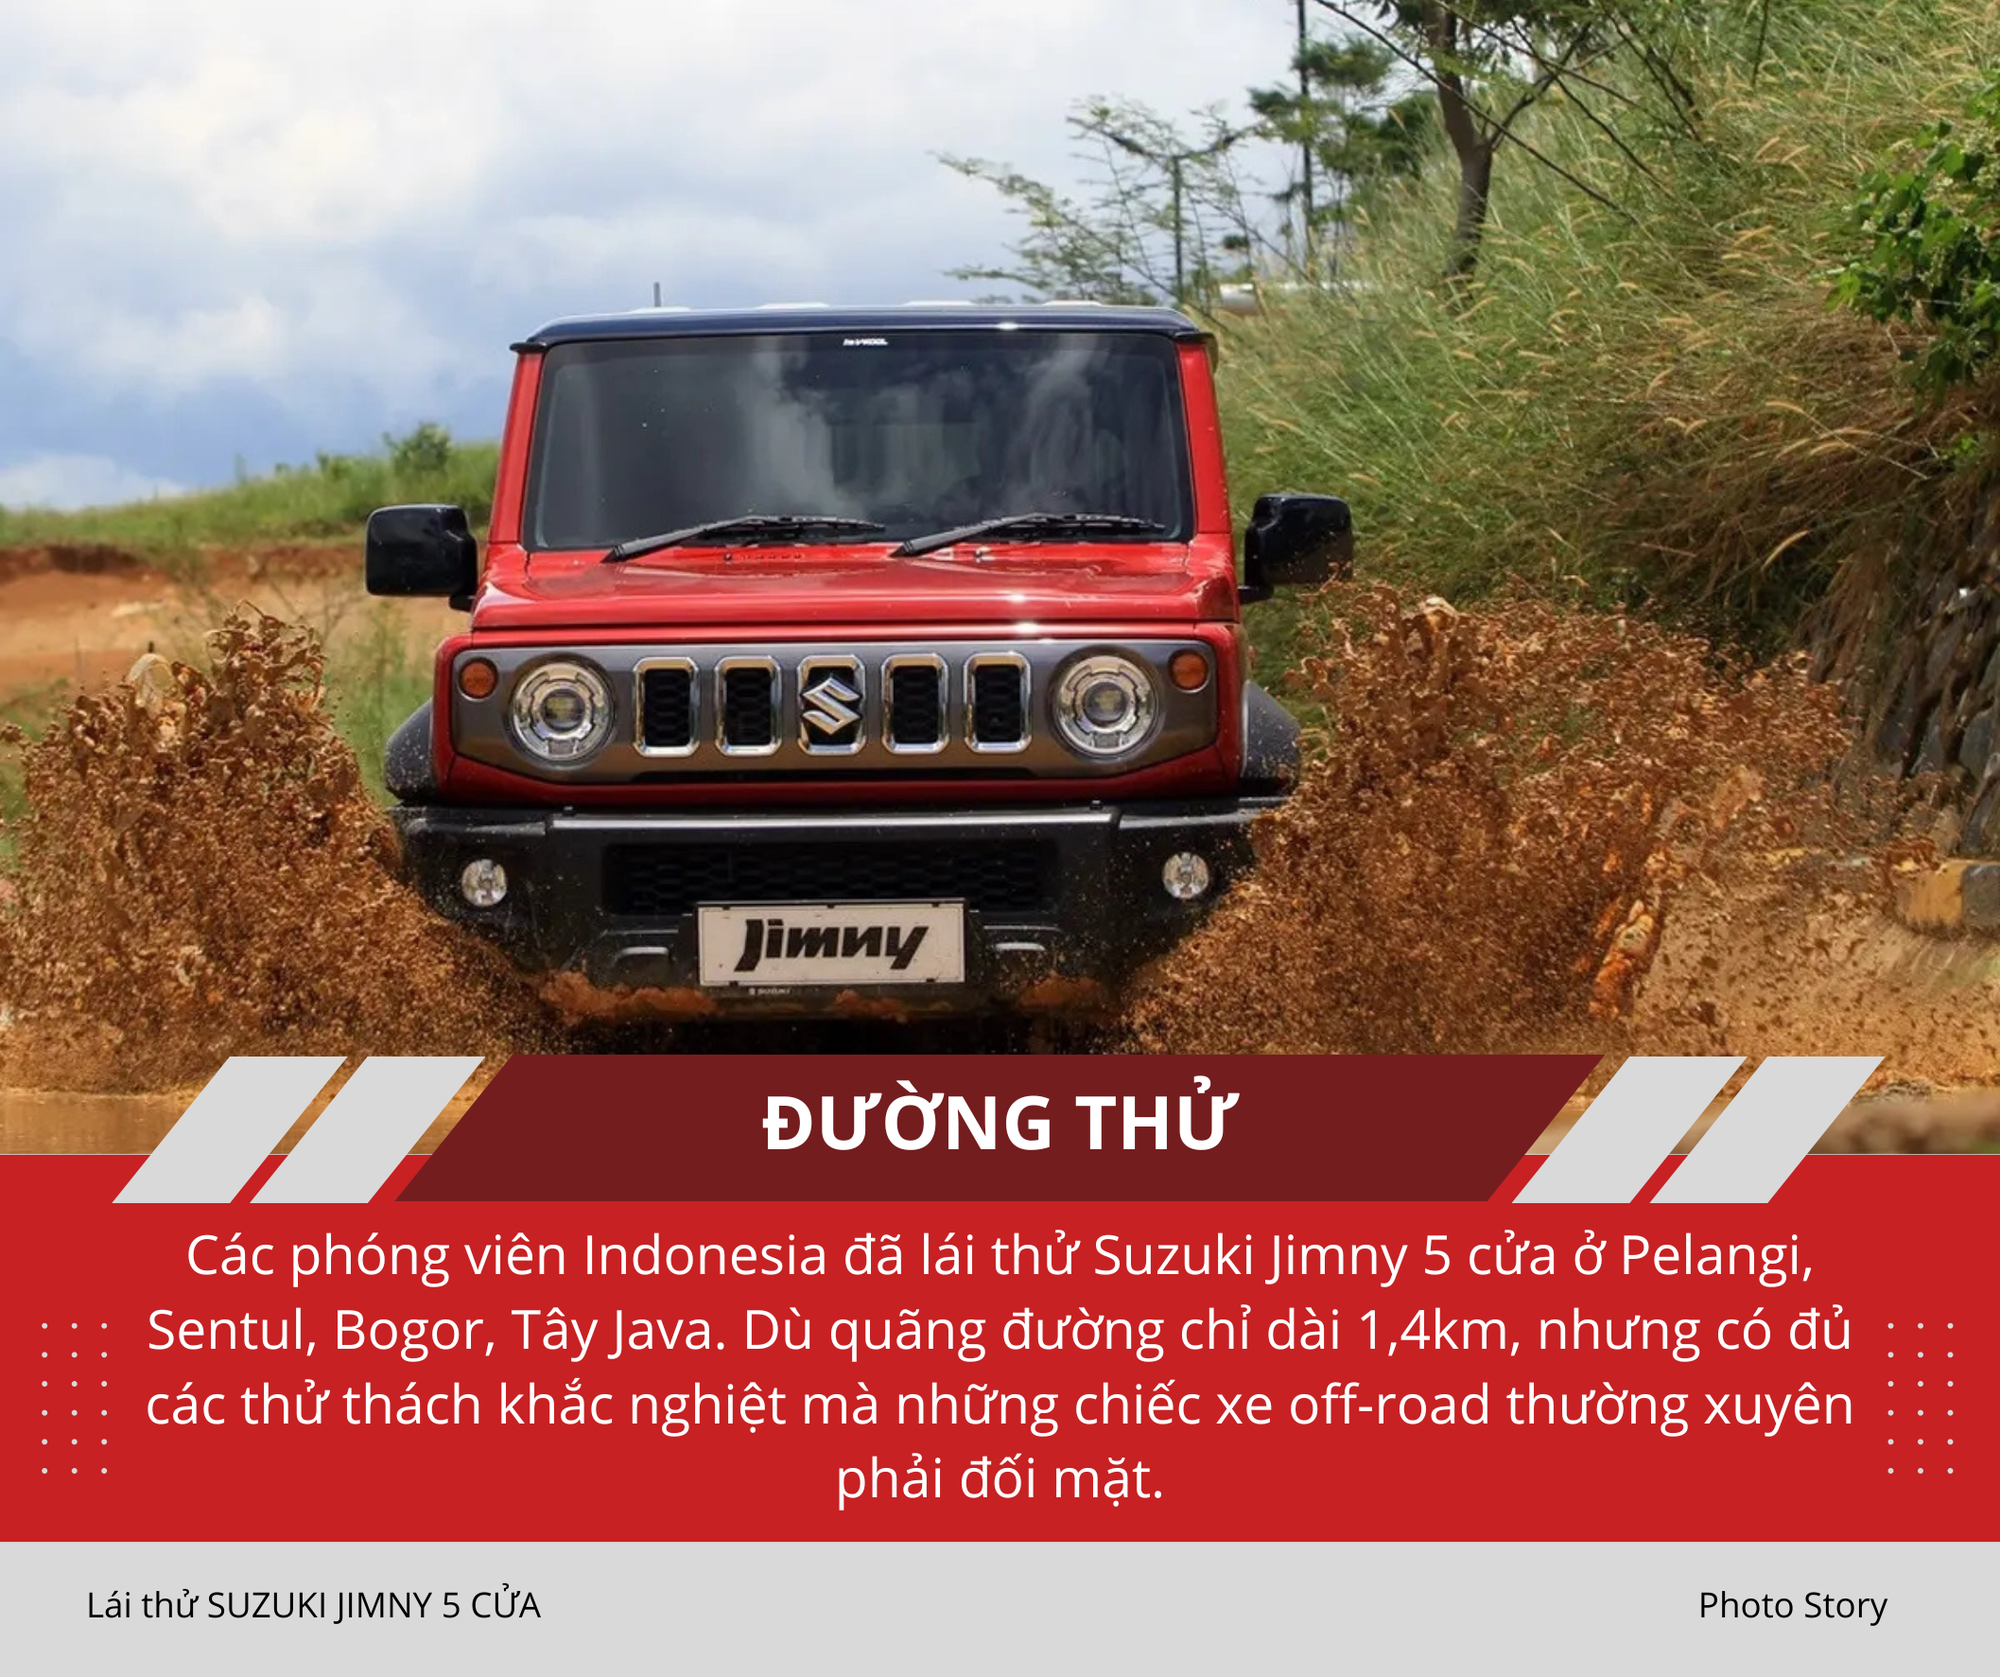 Mang Suzuki Jimny 5 cửa vào rừng 'hành hạ': Nhiều điểm hơn hẳn bản 3 cửa sắp ra mắt Việt Nam, thoải mái cho cả nhà cùng off-road- Ảnh 2.